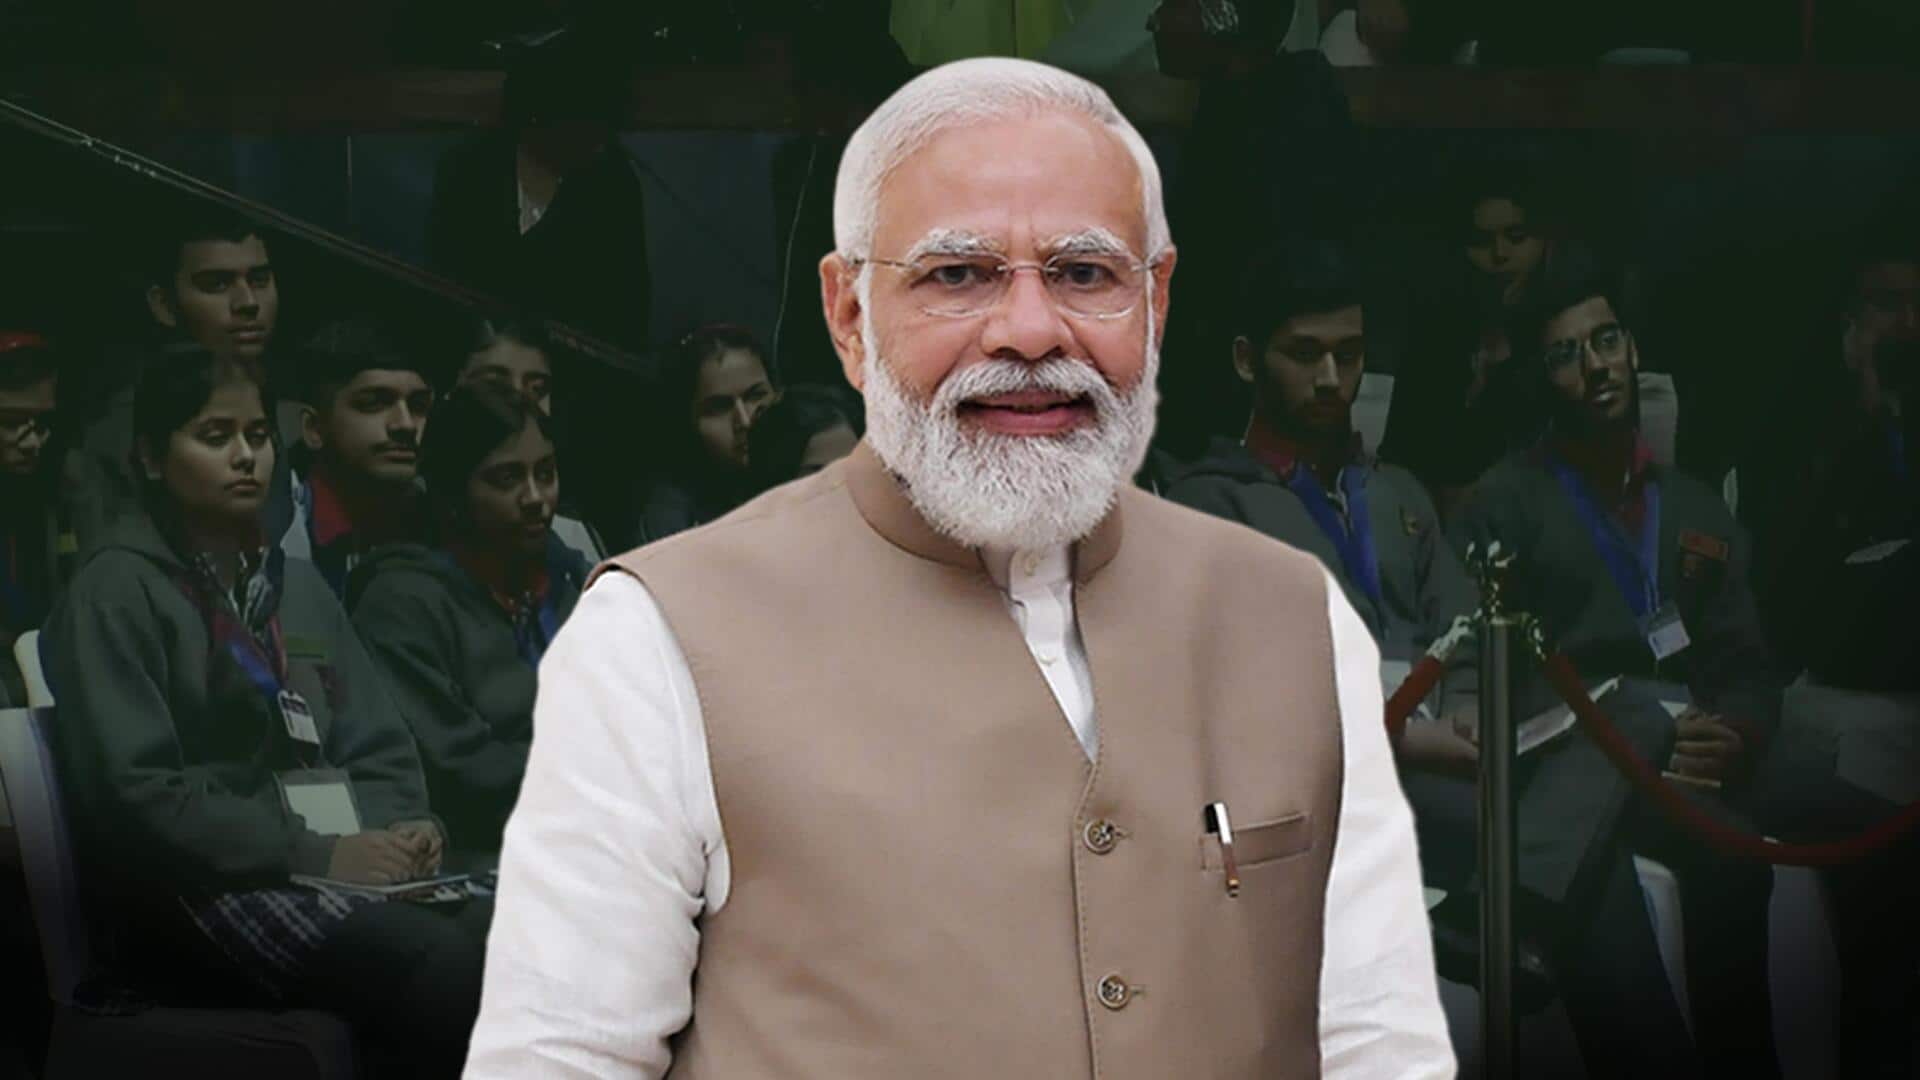 परीक्षा पे चर्चा: प्रधानमंत्री मोदी ने की छात्रों से बातचीत, सफलता के लिए बताए ये टिप्स